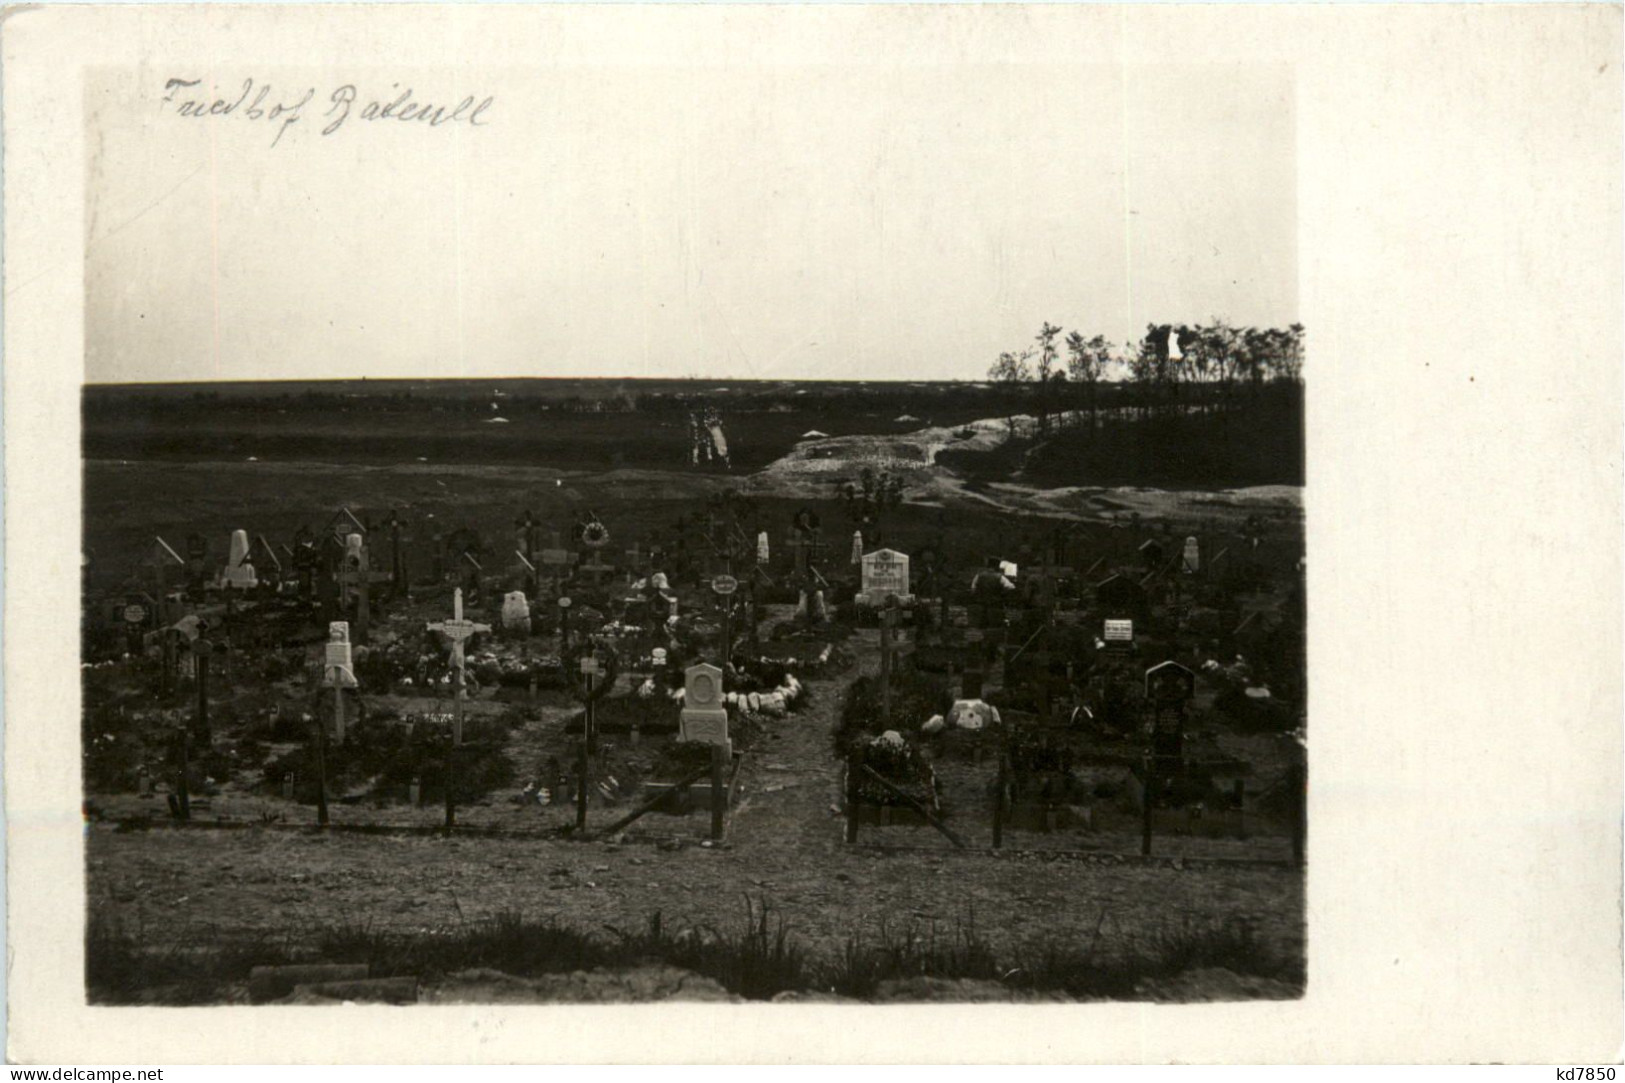 Friedhof Baieull 1. Weltkrieg - War Cemeteries